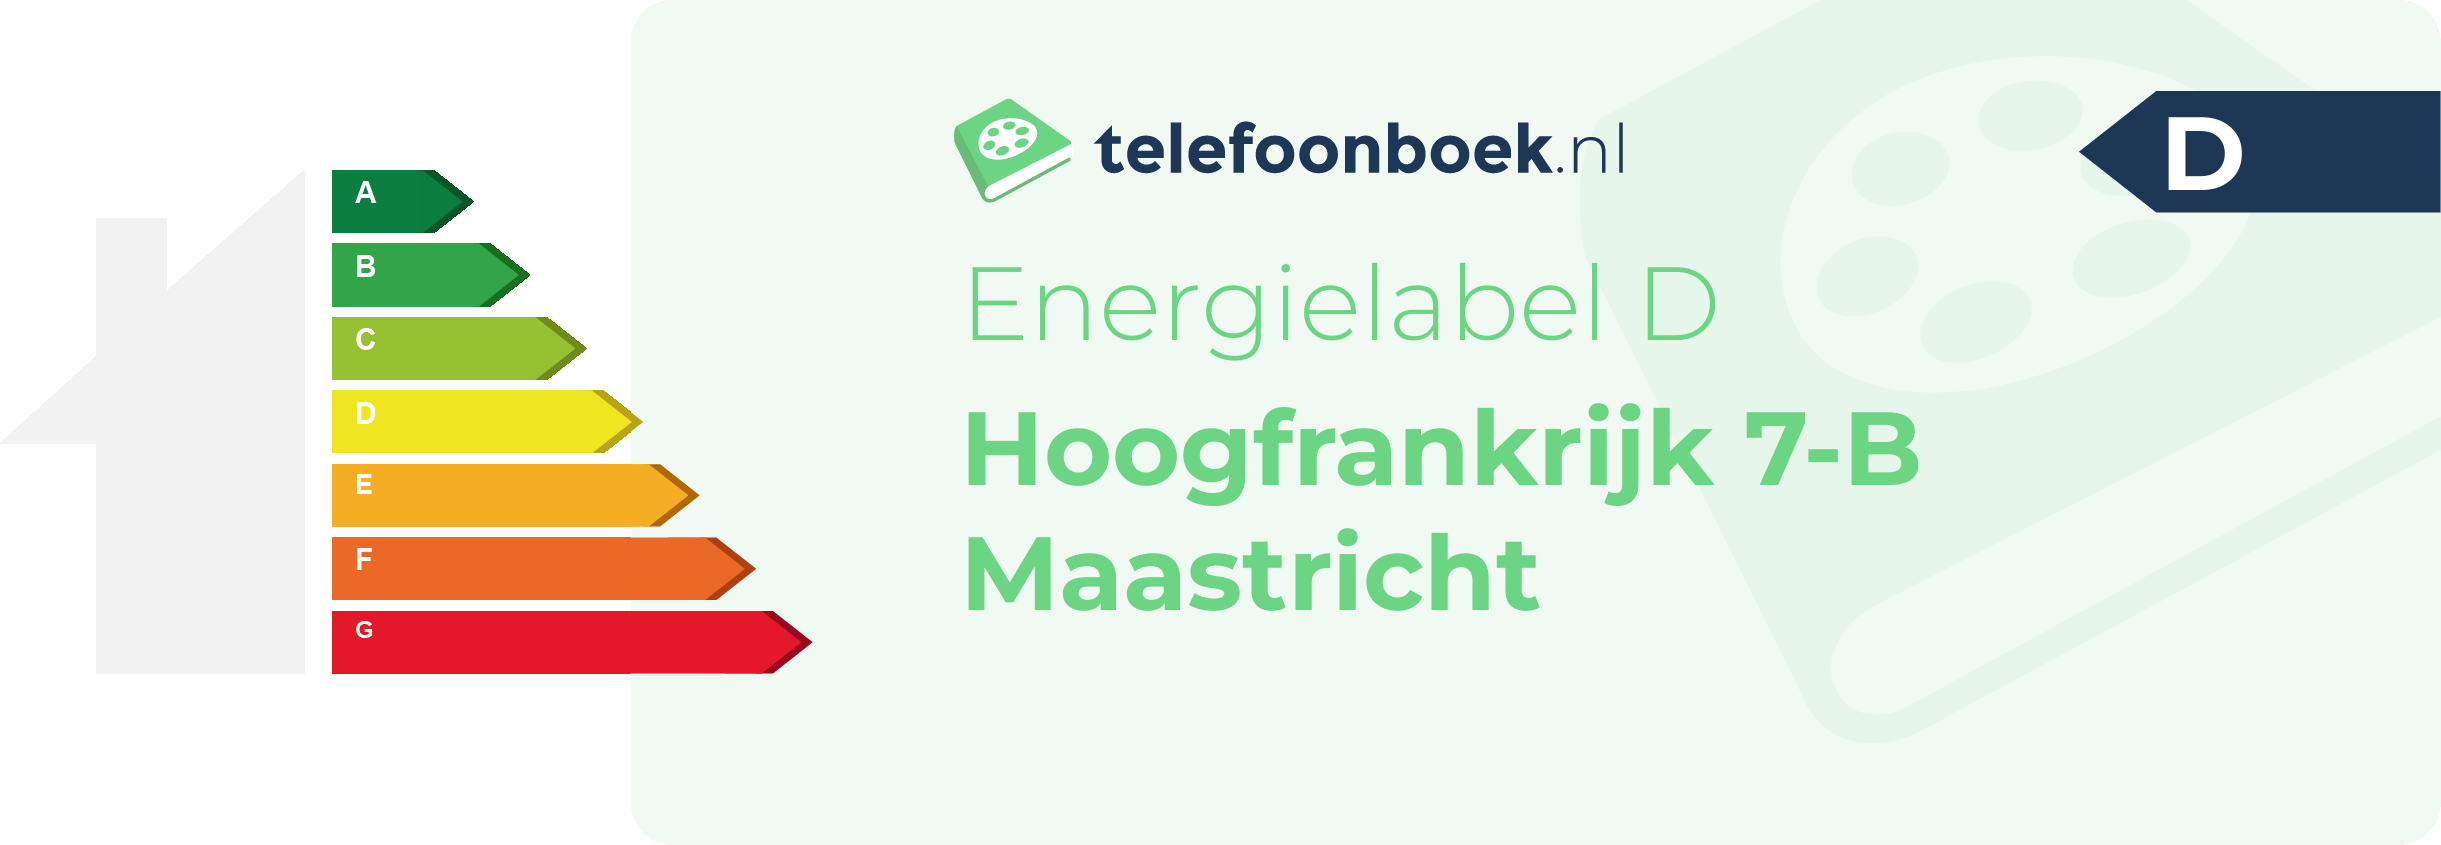 Energielabel Hoogfrankrijk 7-B Maastricht